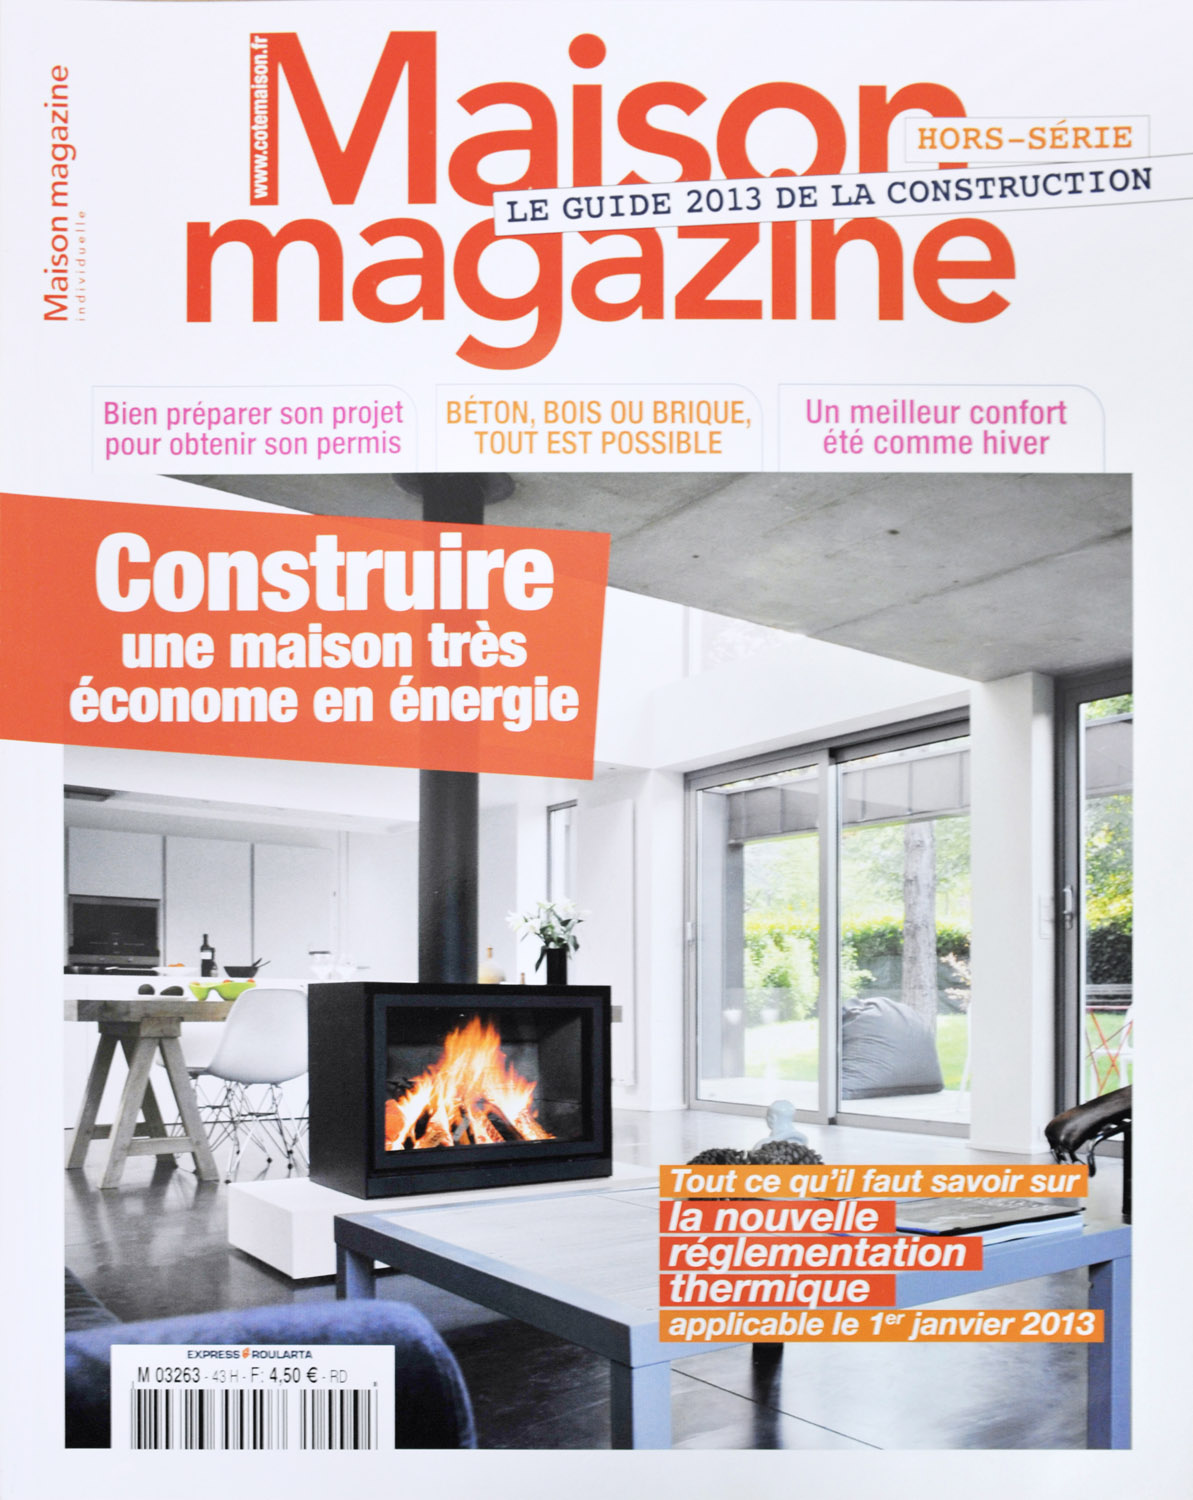 Publications, Maison Magazine